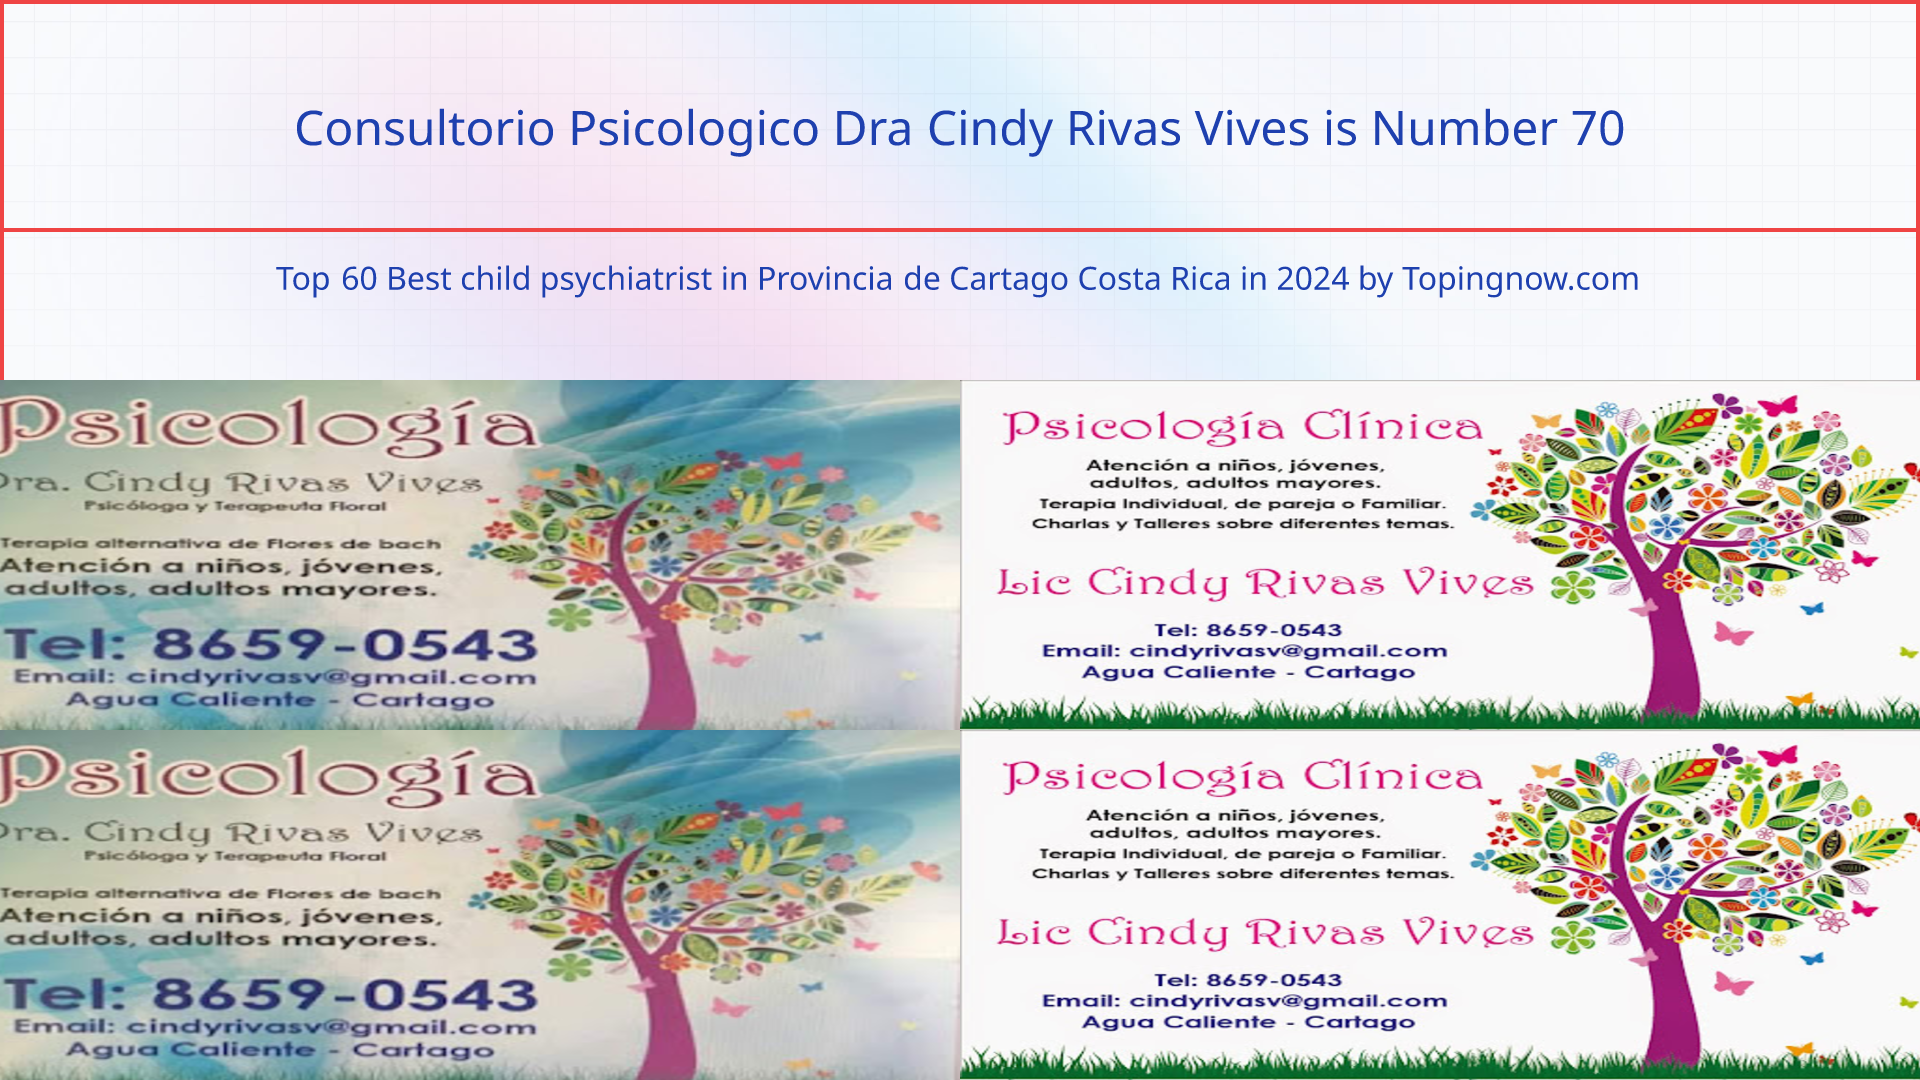 Consultorio Psicologico Dra Cindy Rivas Vives: Top 60 Best child psychiatrist in Provincia de Cartago Costa Rica in 2024